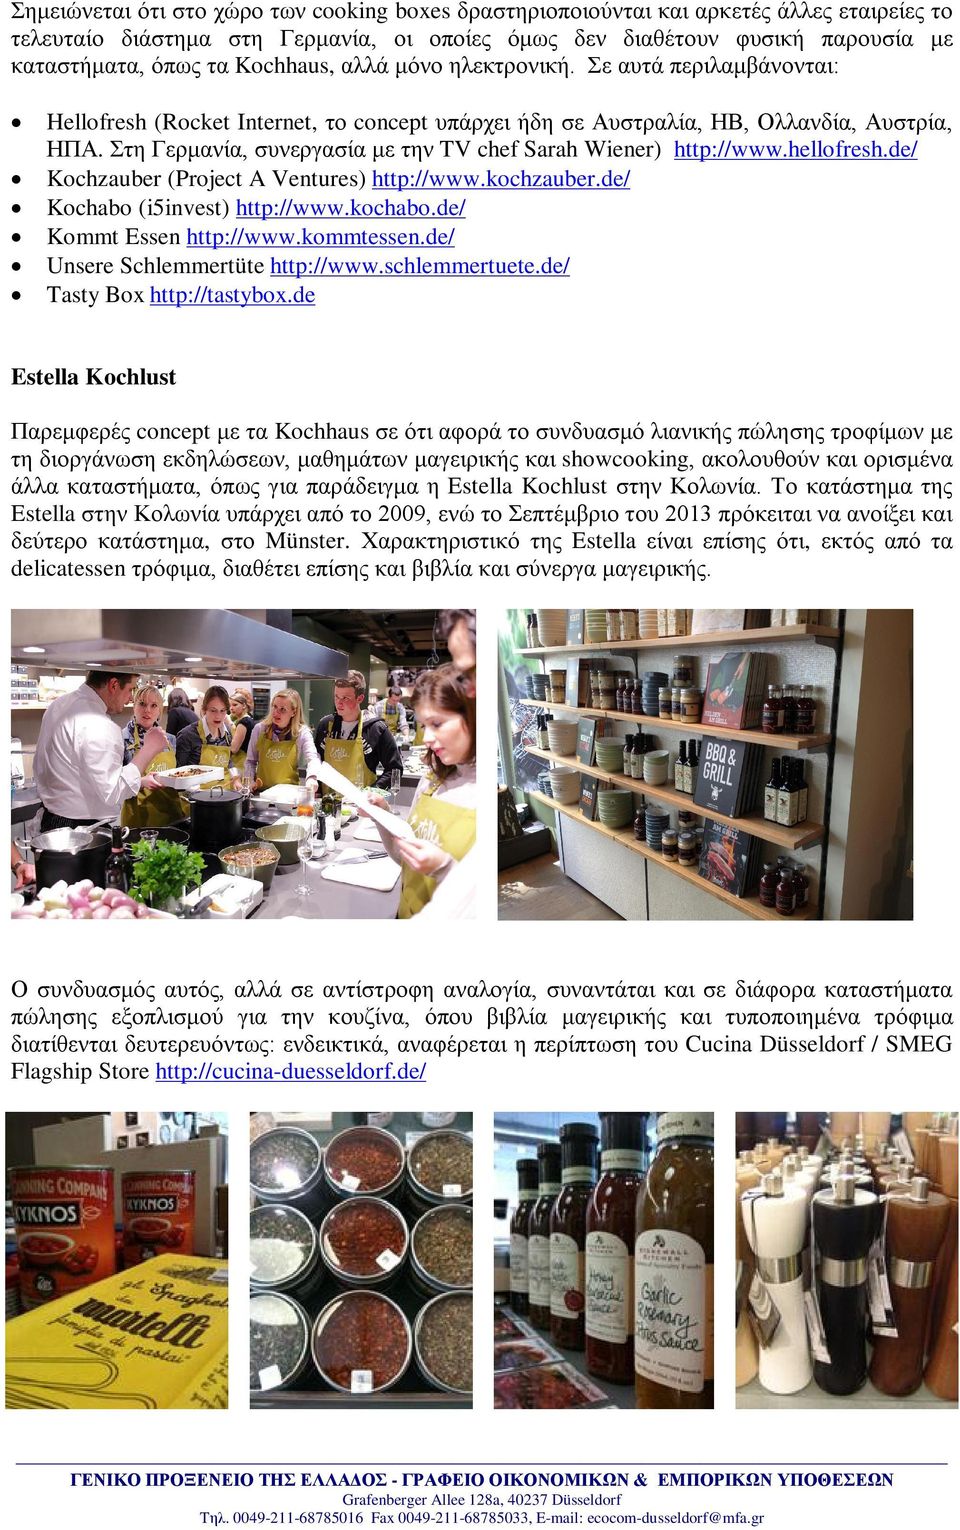 Στη Γερμανία, συνεργασία με την TV chef Sarah Wiener) http://www.hellofresh.de/ Kochzauber (Project A Ventures) http://www.kochzauber.de/ Kochabo (i5invest) http://www.kochabo.